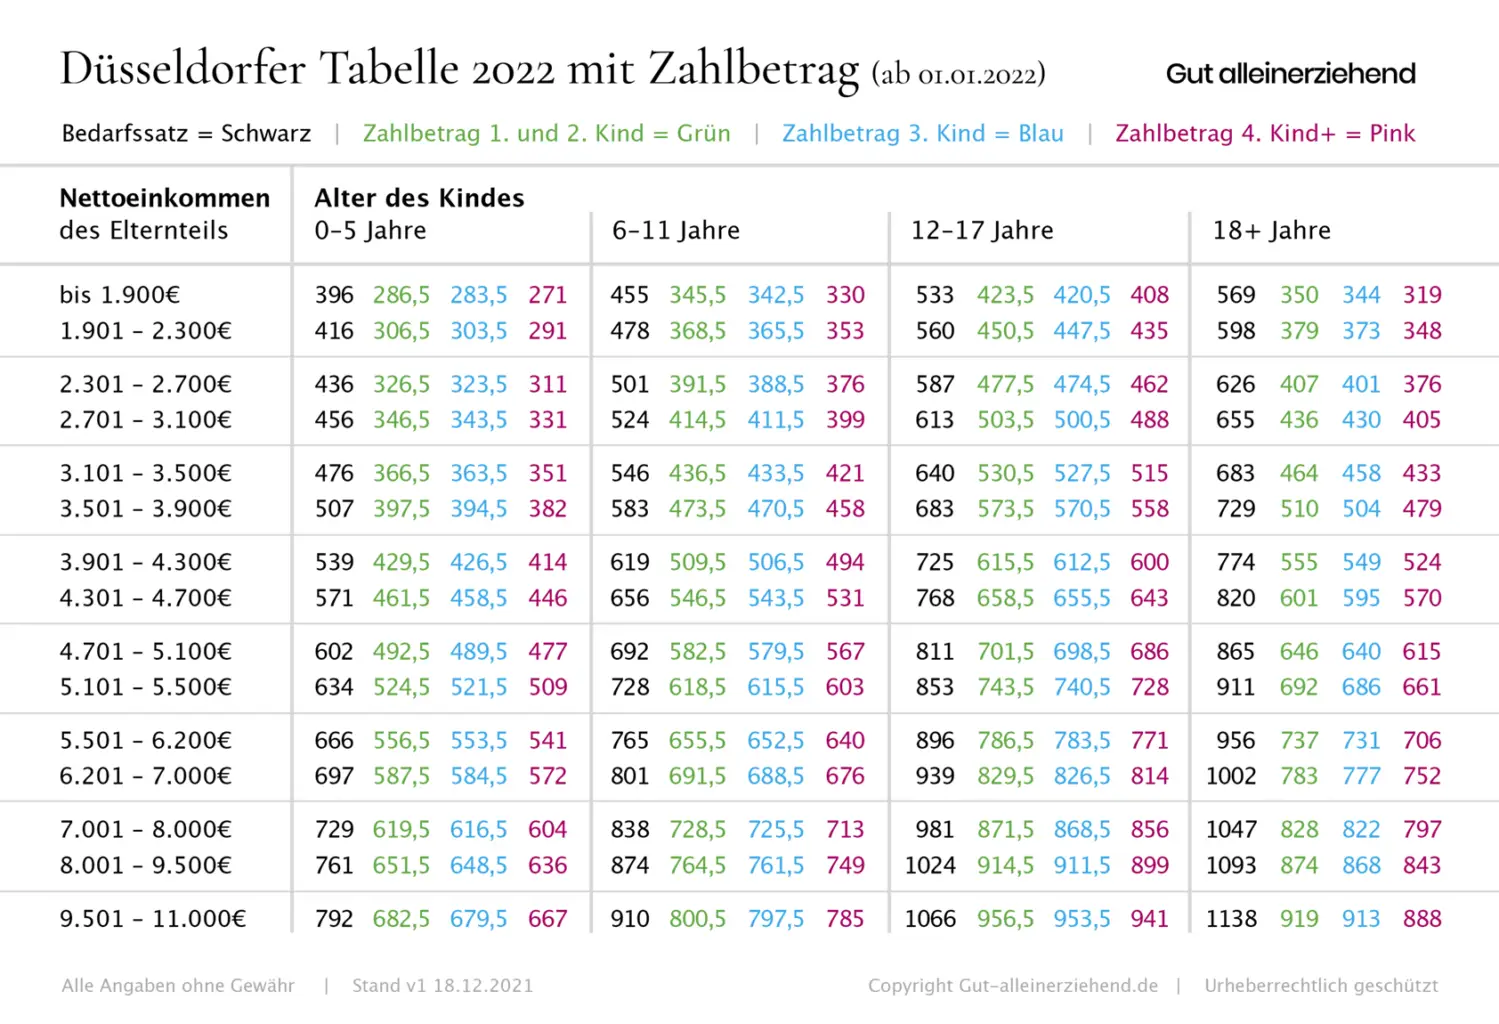 Düsseldorfer Tabelle 2022 mit Zahlbetrag